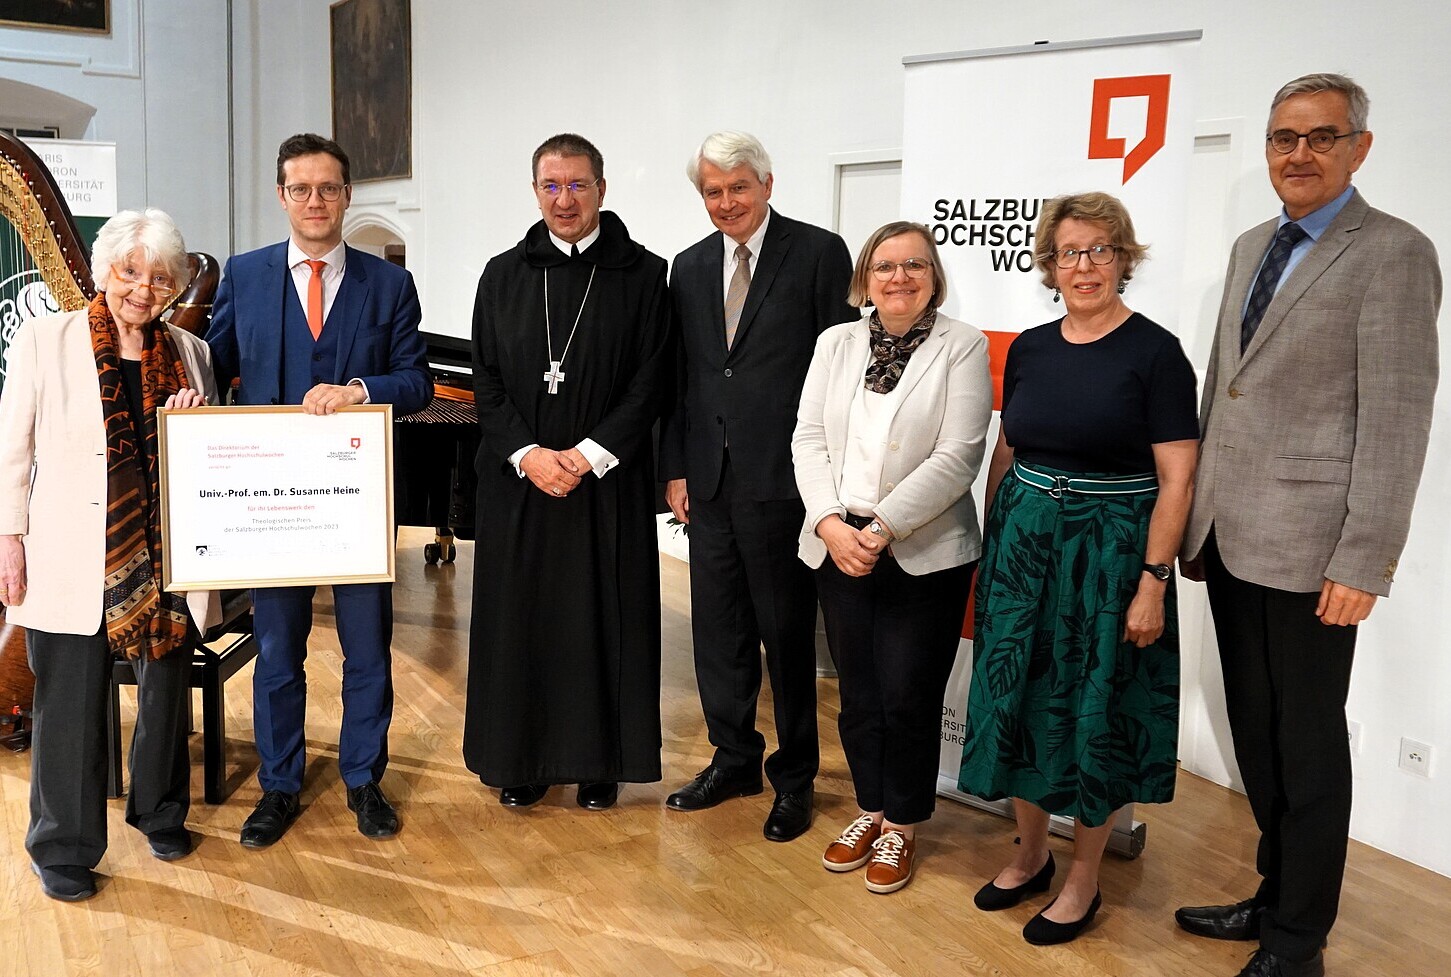 Salzburg: Theologischer Preis an Religionspsychologin Heine verliehen